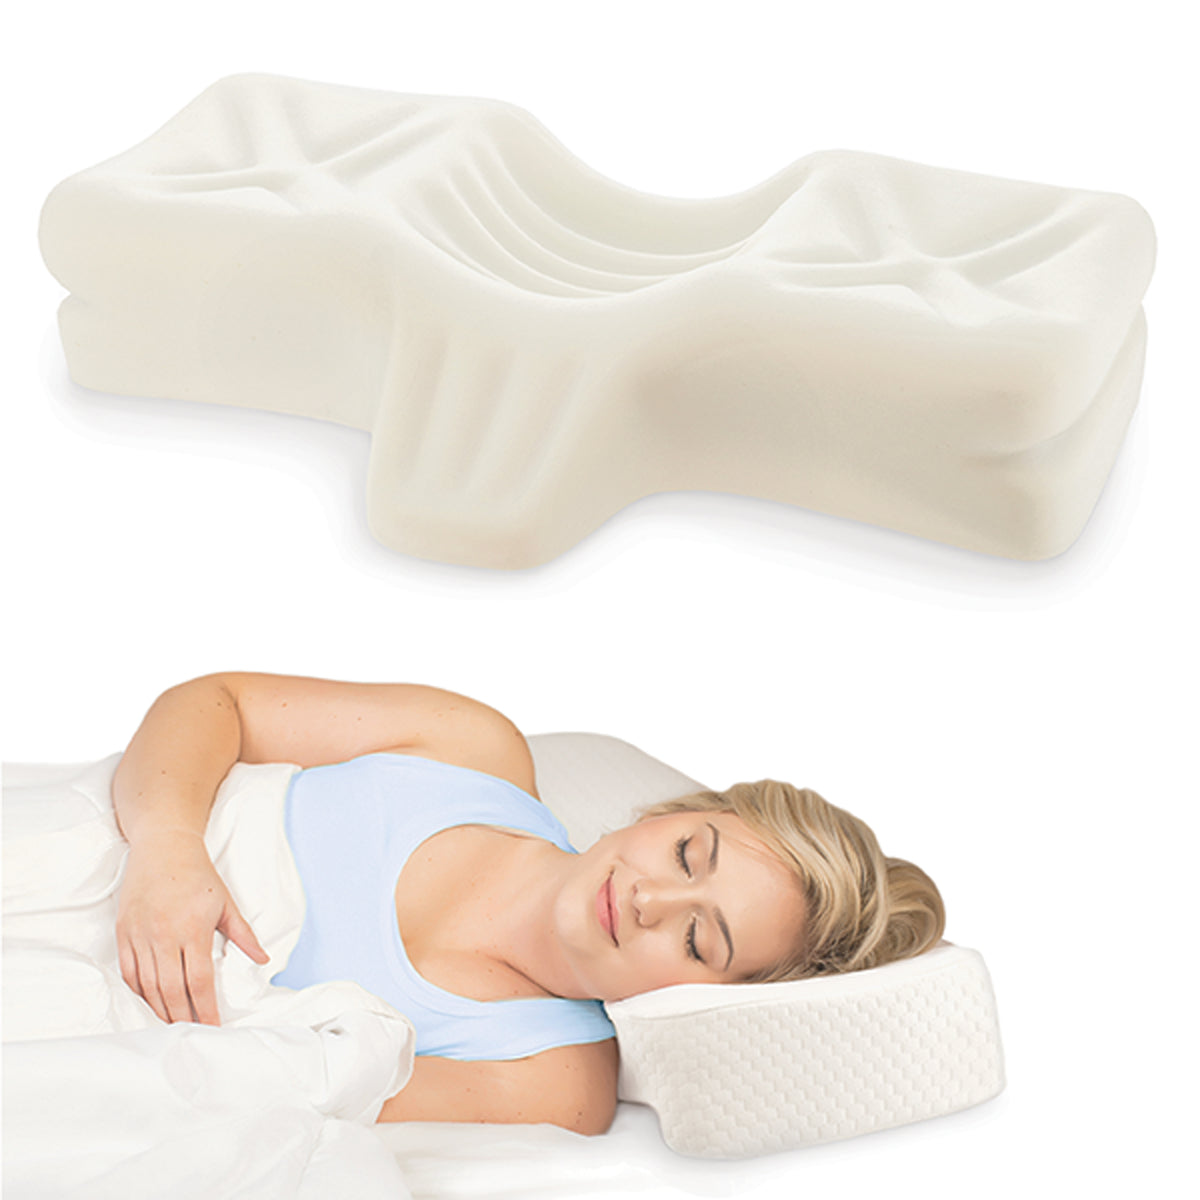 In-Between-The-Knee-Pillow- Polyurethane Foam